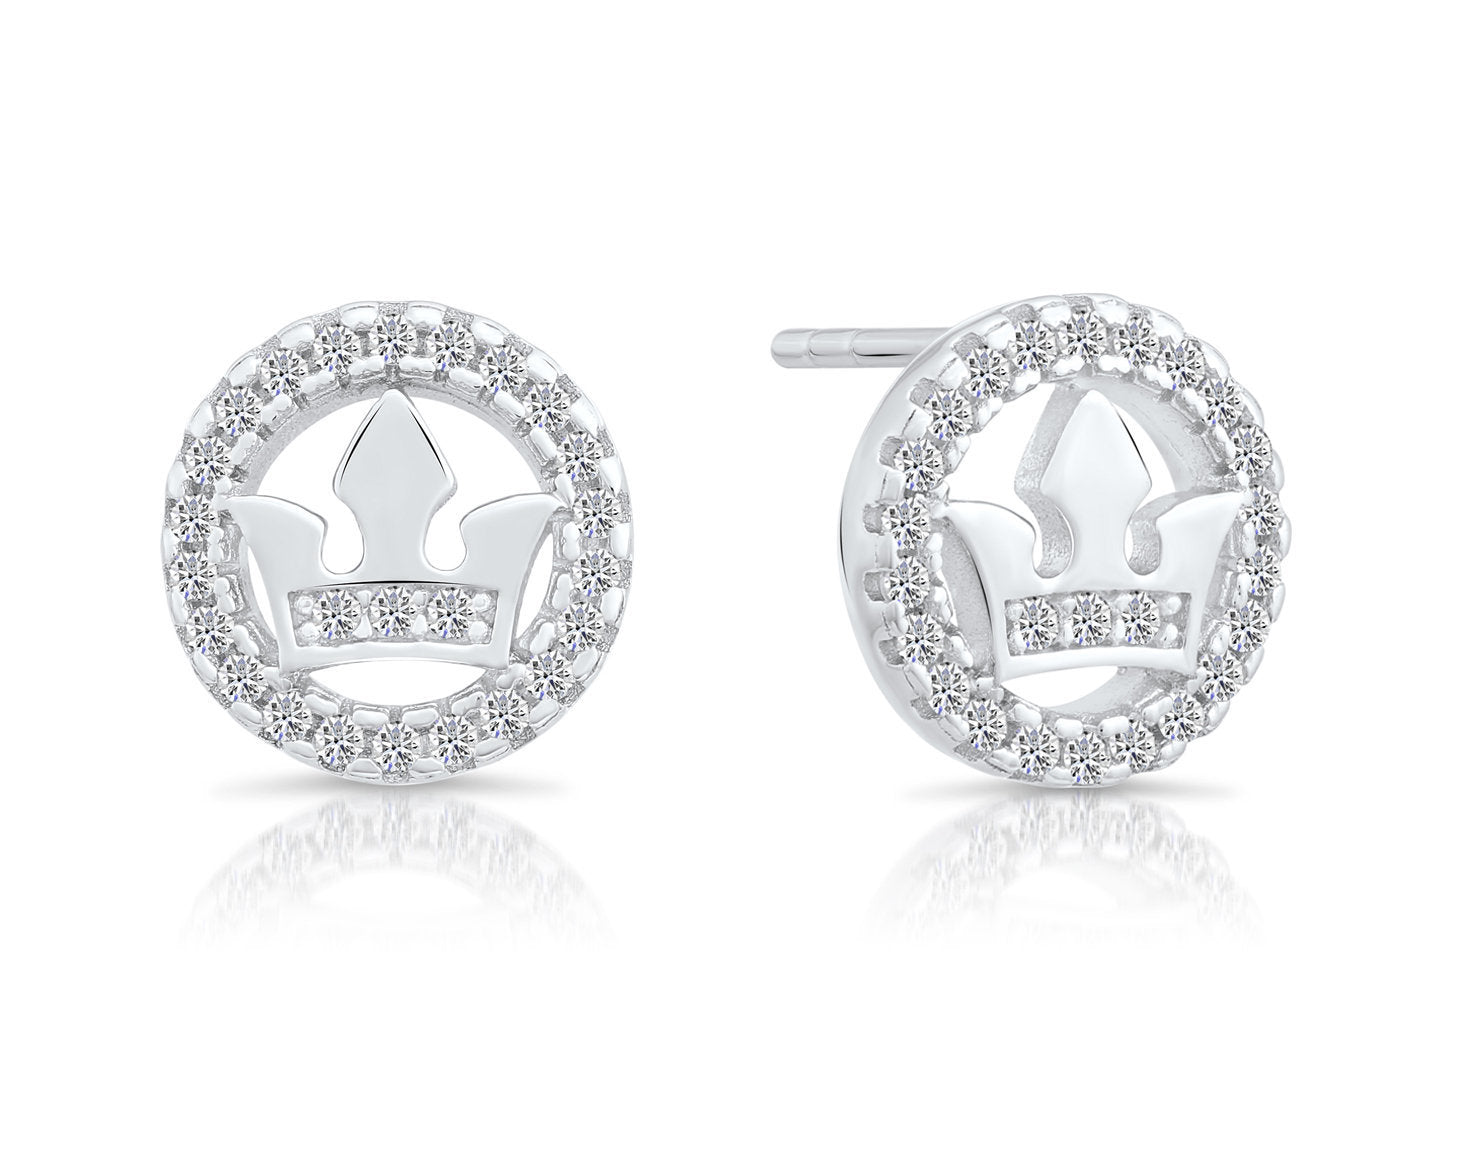 Sterling Silver Halo Crown Stud Earrings, Barbados